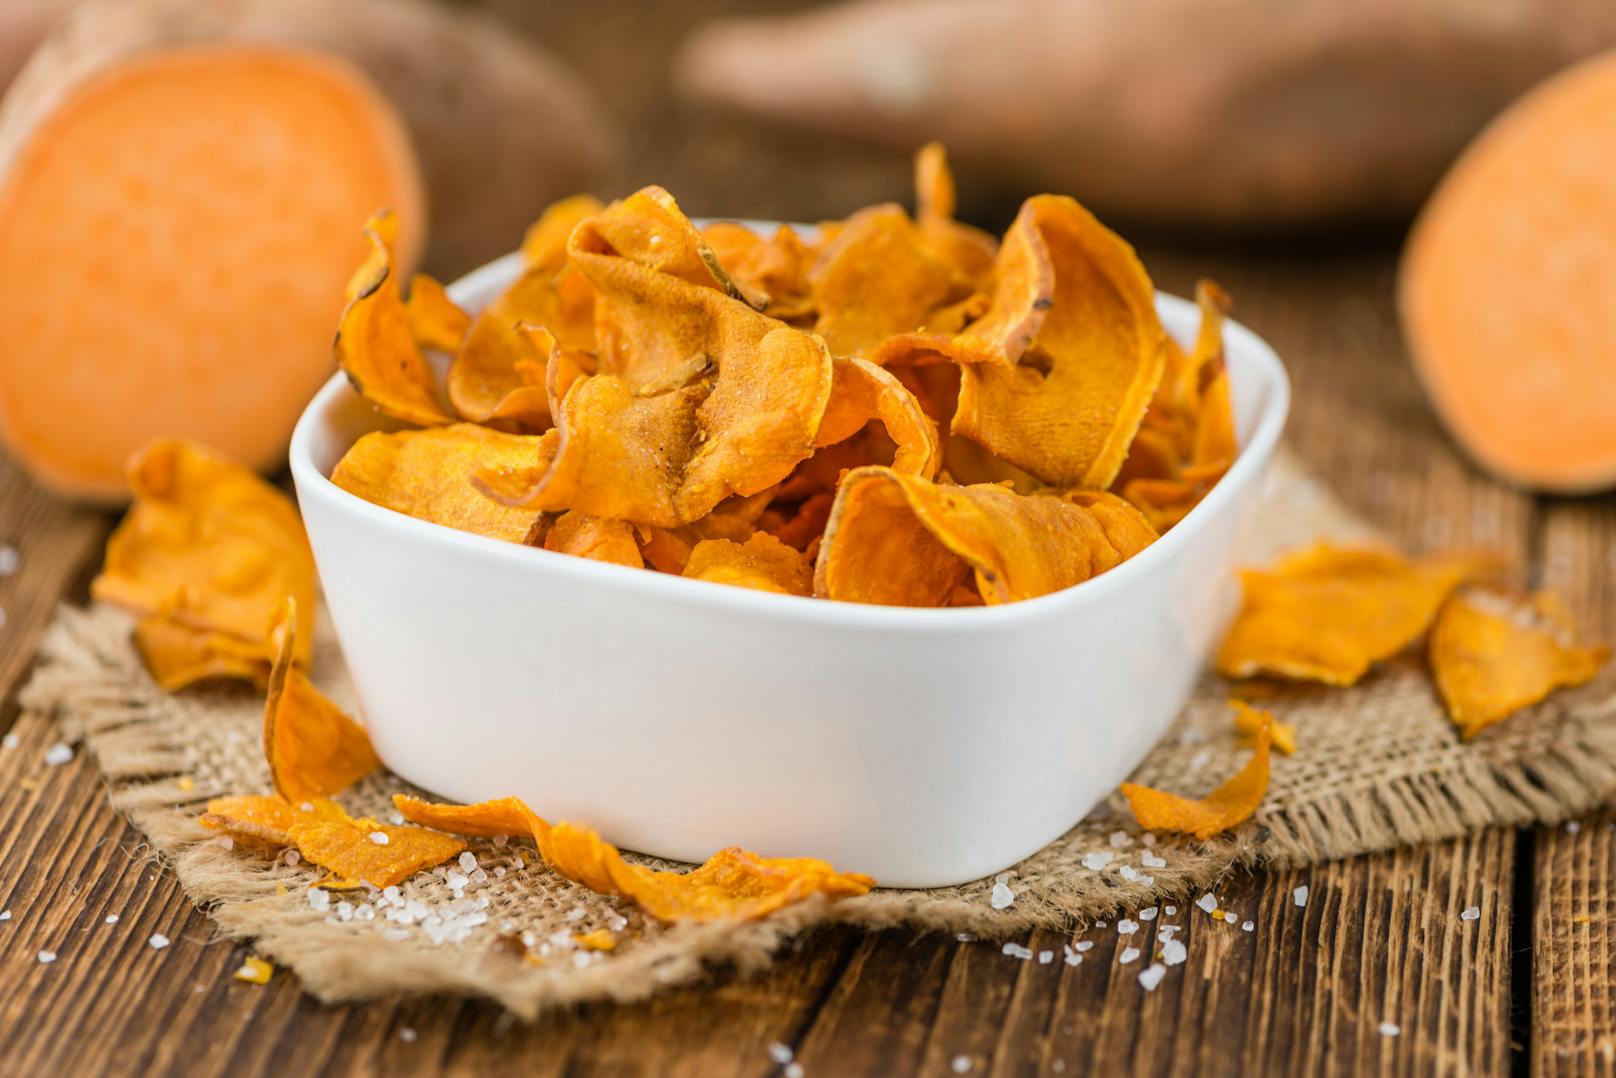 Chips aus Gemüse, Linsen- oder Kichererbsen: Sind sie wirklich eine sinnvolle Alternative zu herkömmlichen Kartoffelchips? Die Verbraucherzentrale NRW klärt auf.